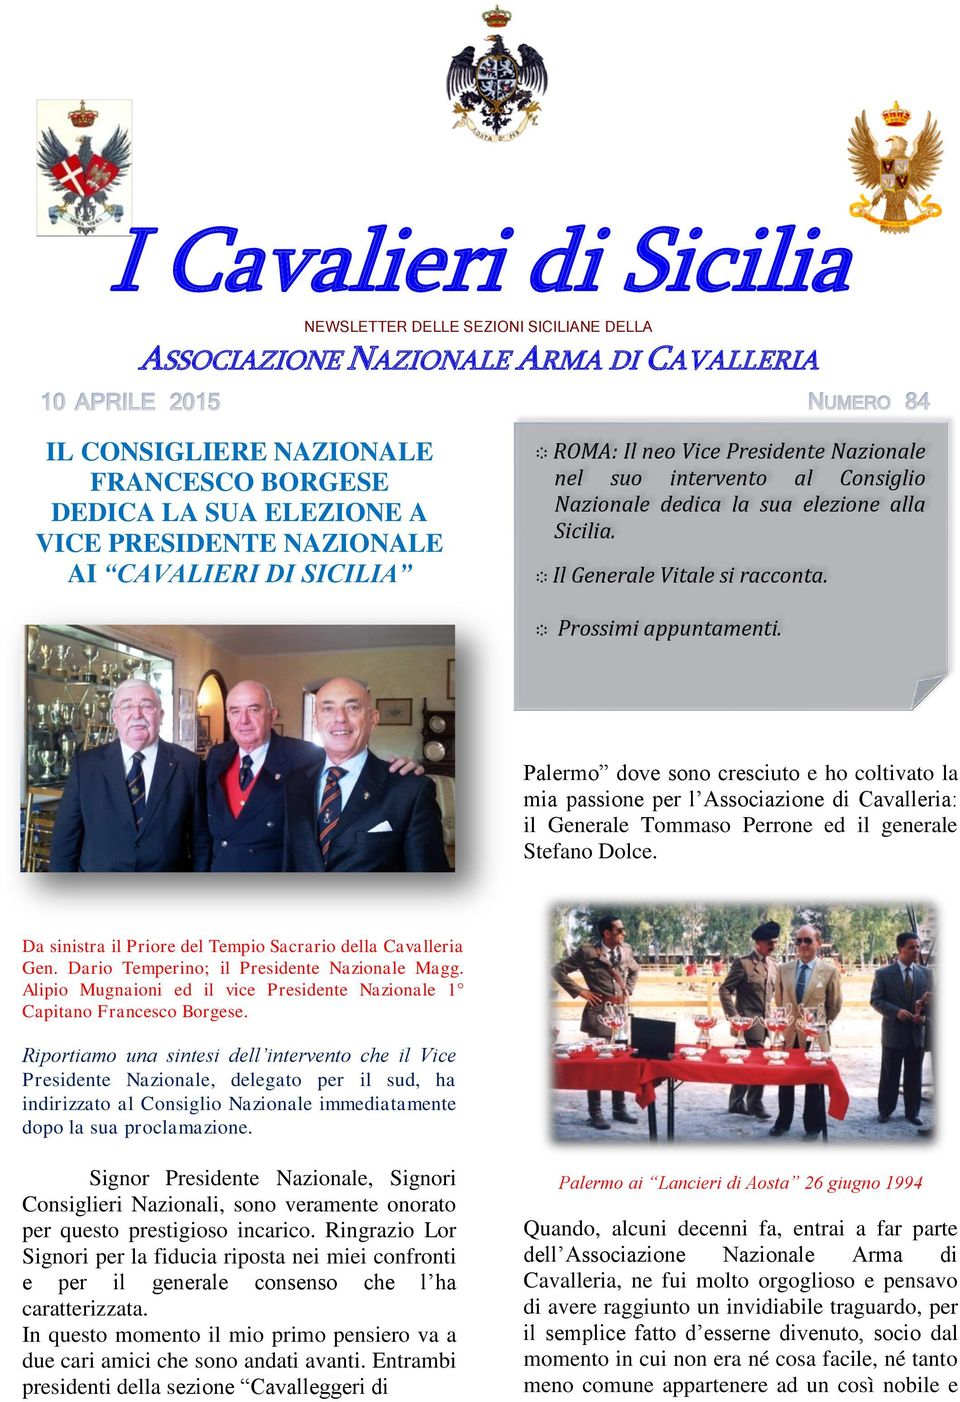 Palermo dove sono cresciuto e ho coltivato la mia passione per l Associazione di Cavalleria: il Generale Tommaso Perrone ed il generale Stefano Dolce.